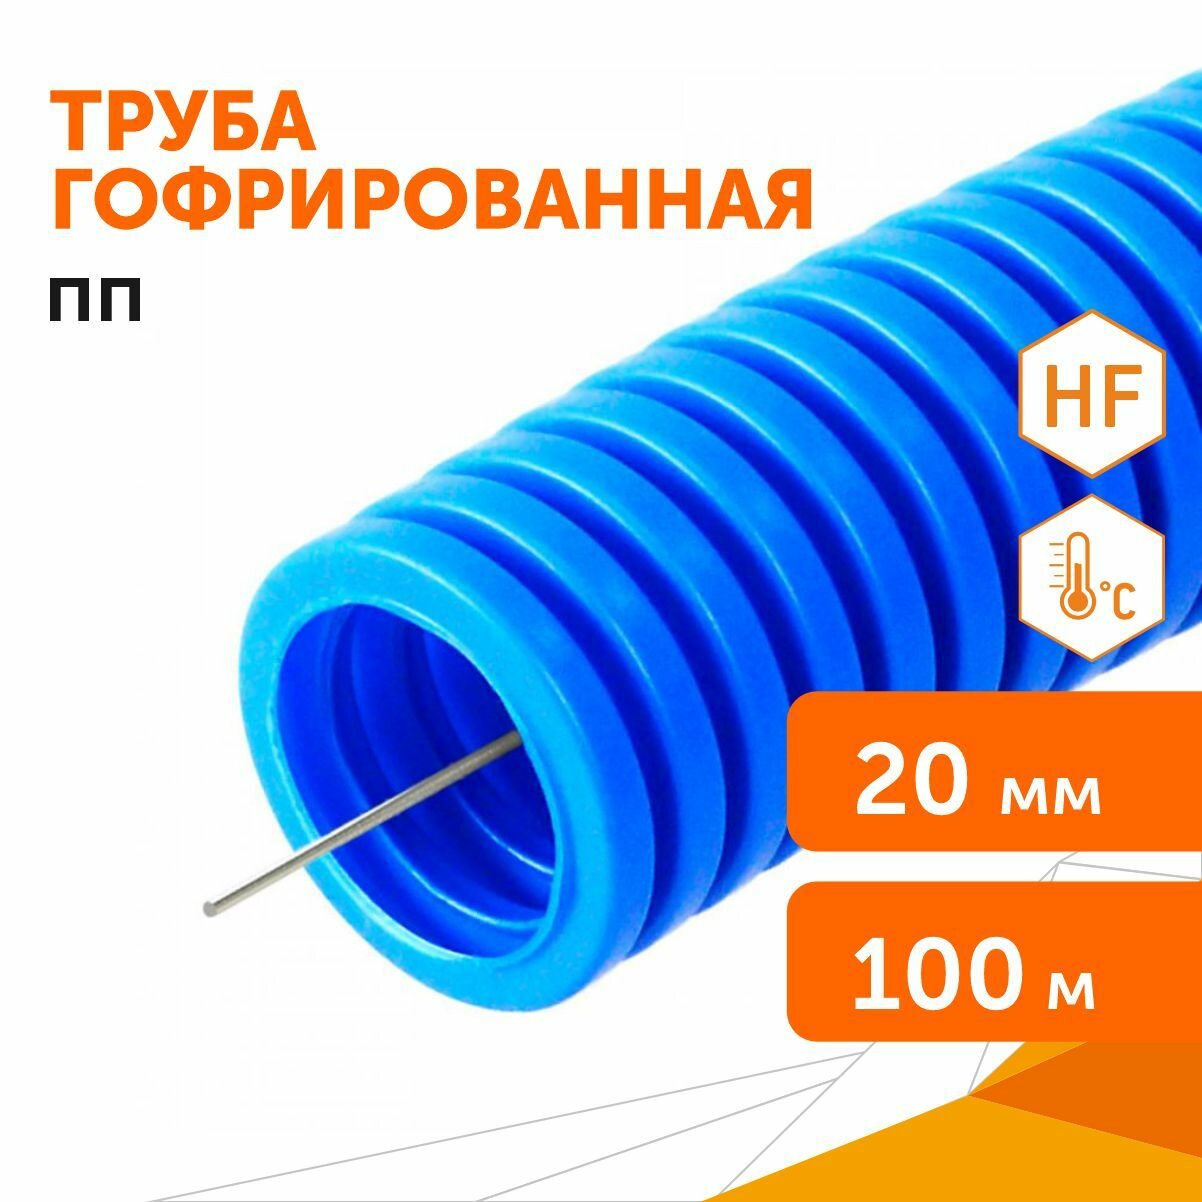 Труба гофрированная ПП лёгкая 350 Н безгалогенная (HF) синяя с/з d20 мм, 100м